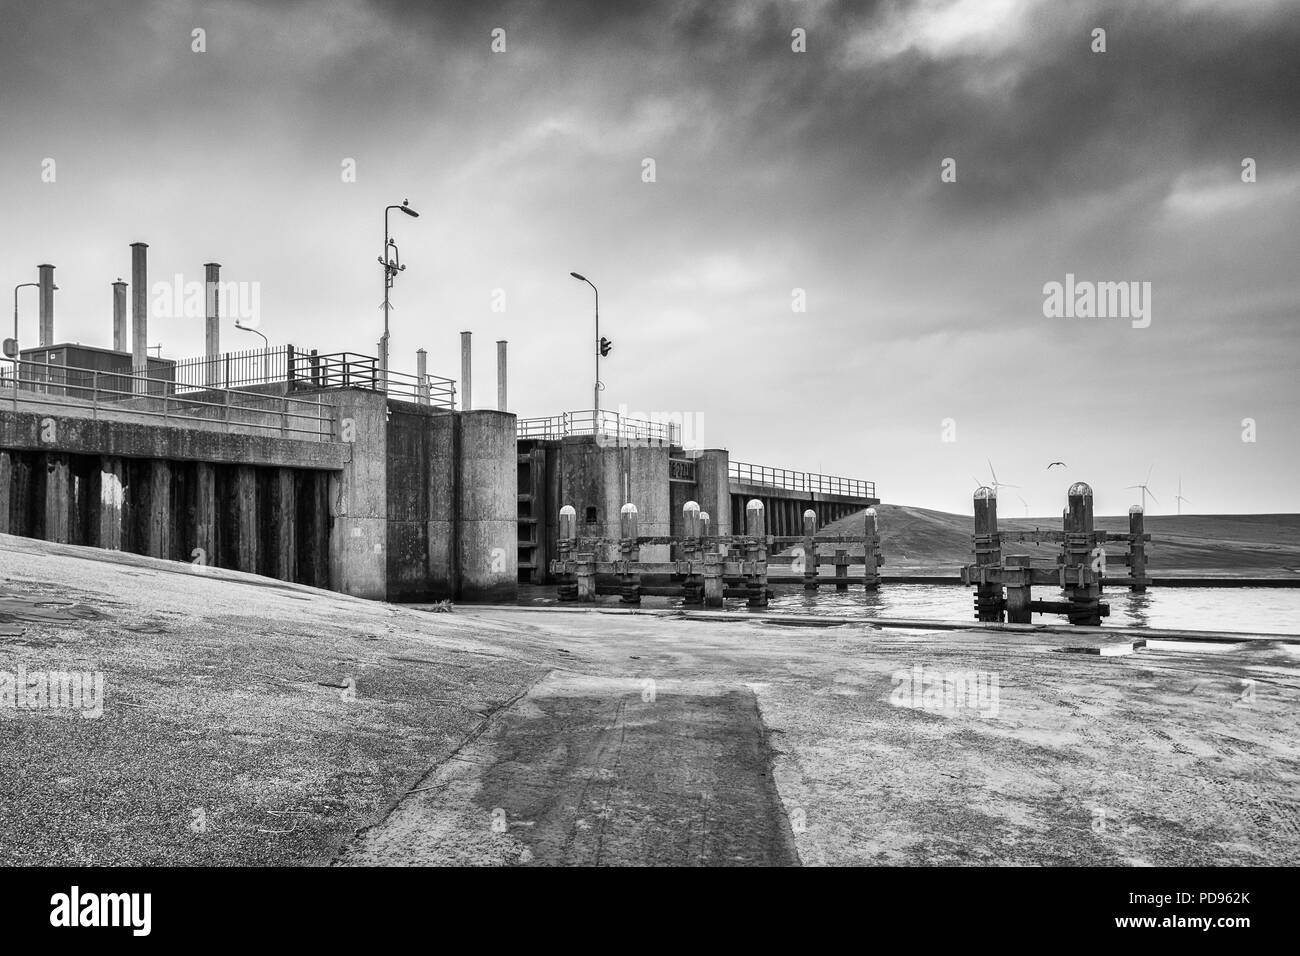 Foto in bianco e nero della serratura al fiume Eems in Termunterzijl nella provincia di Groningen nei Paesi Bassi Foto Stock